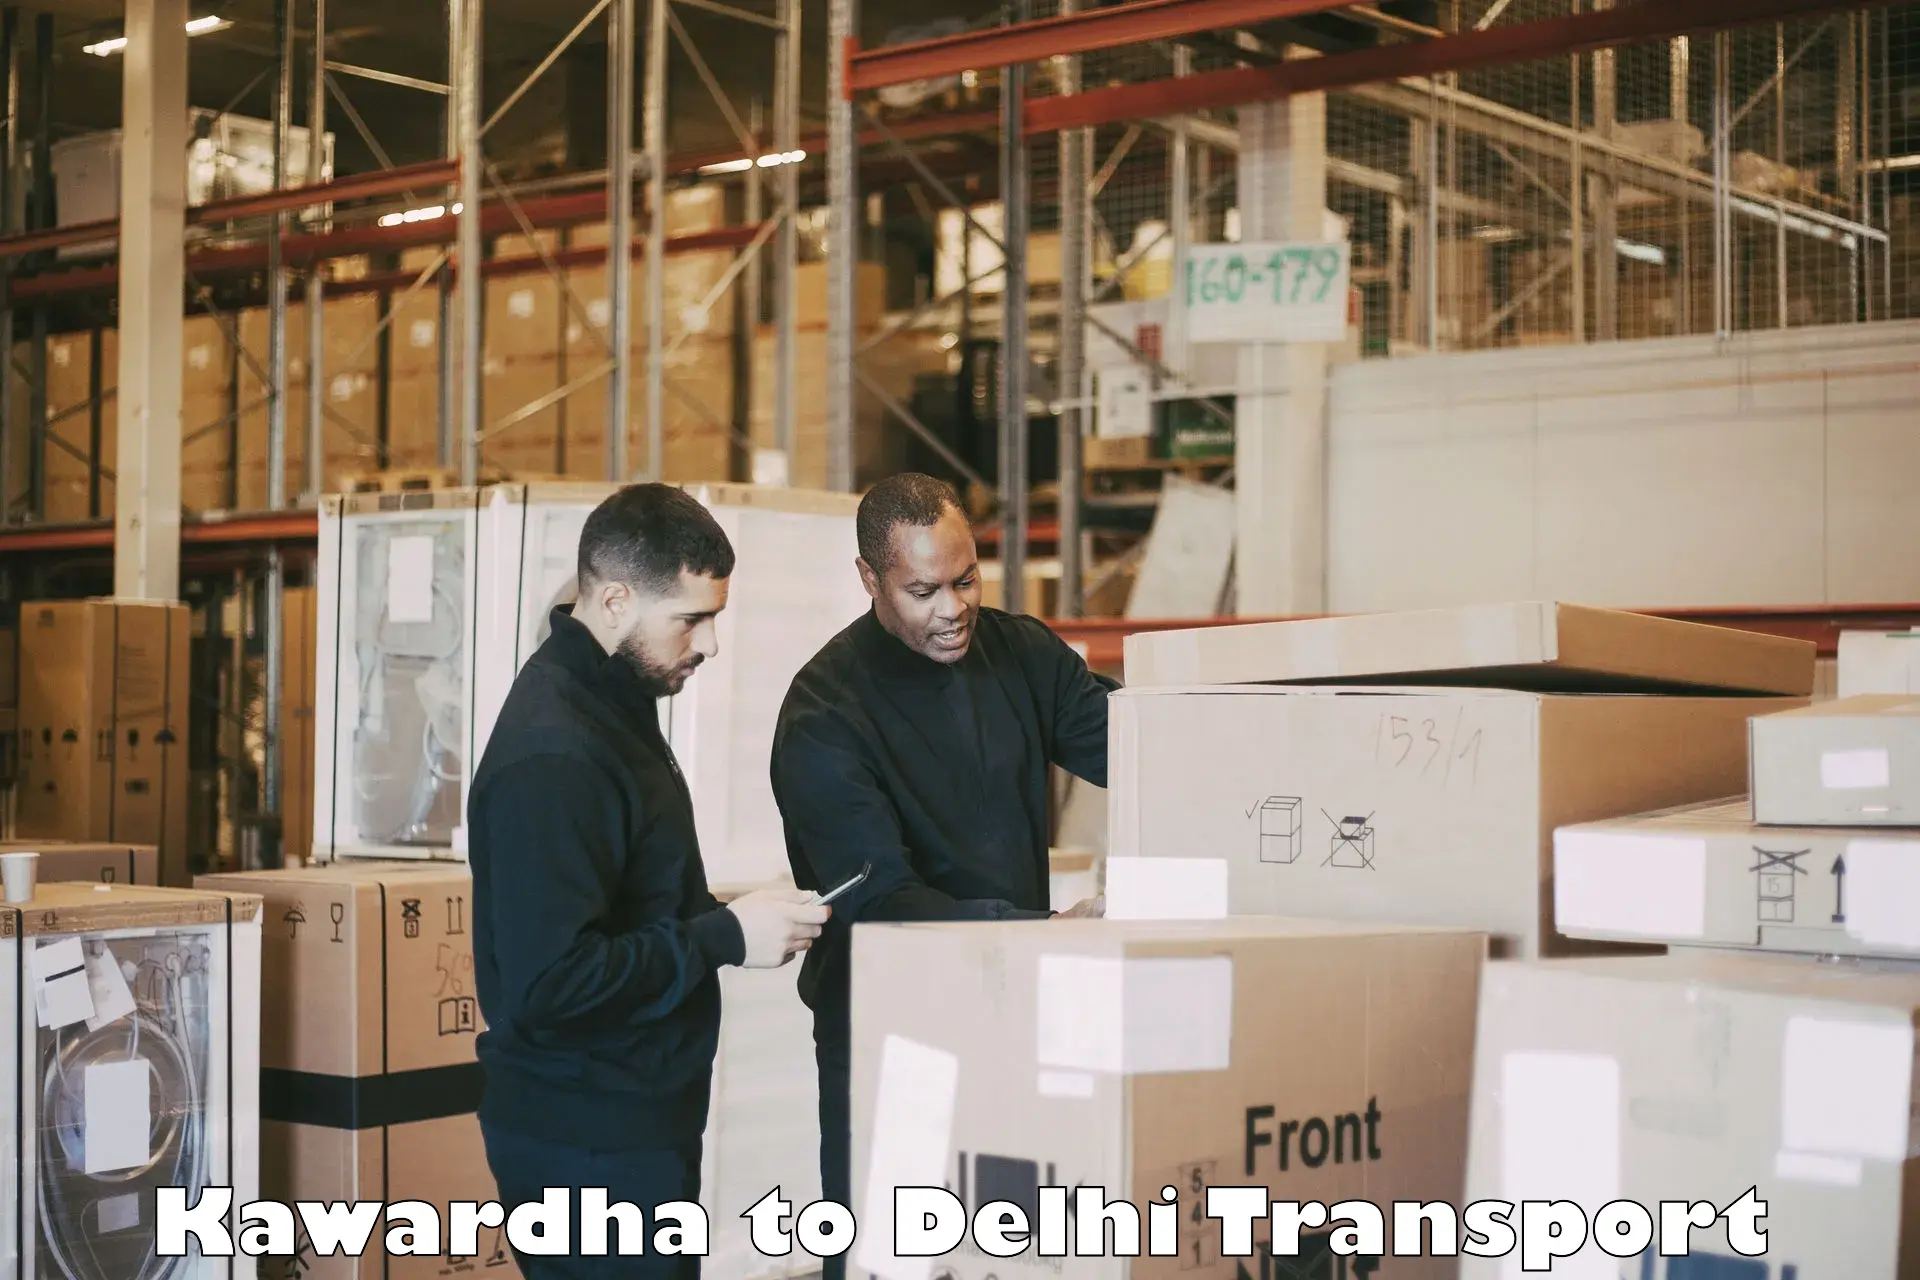 Daily transport service Kawardha to Delhi